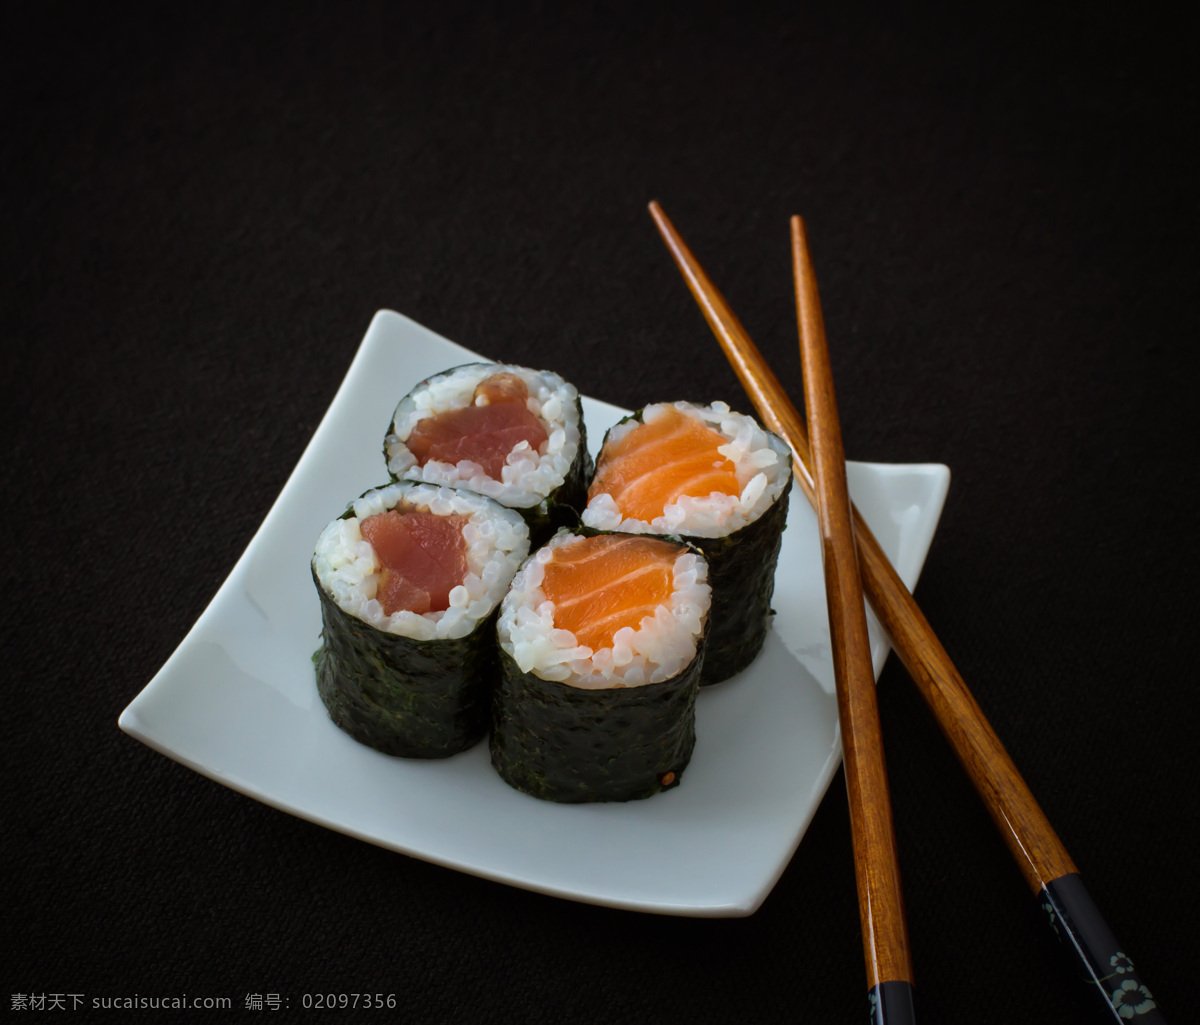 筷子 寿司 日本料理 日本美食 国外美食 美味 食物摄影 外国美食 餐饮美食